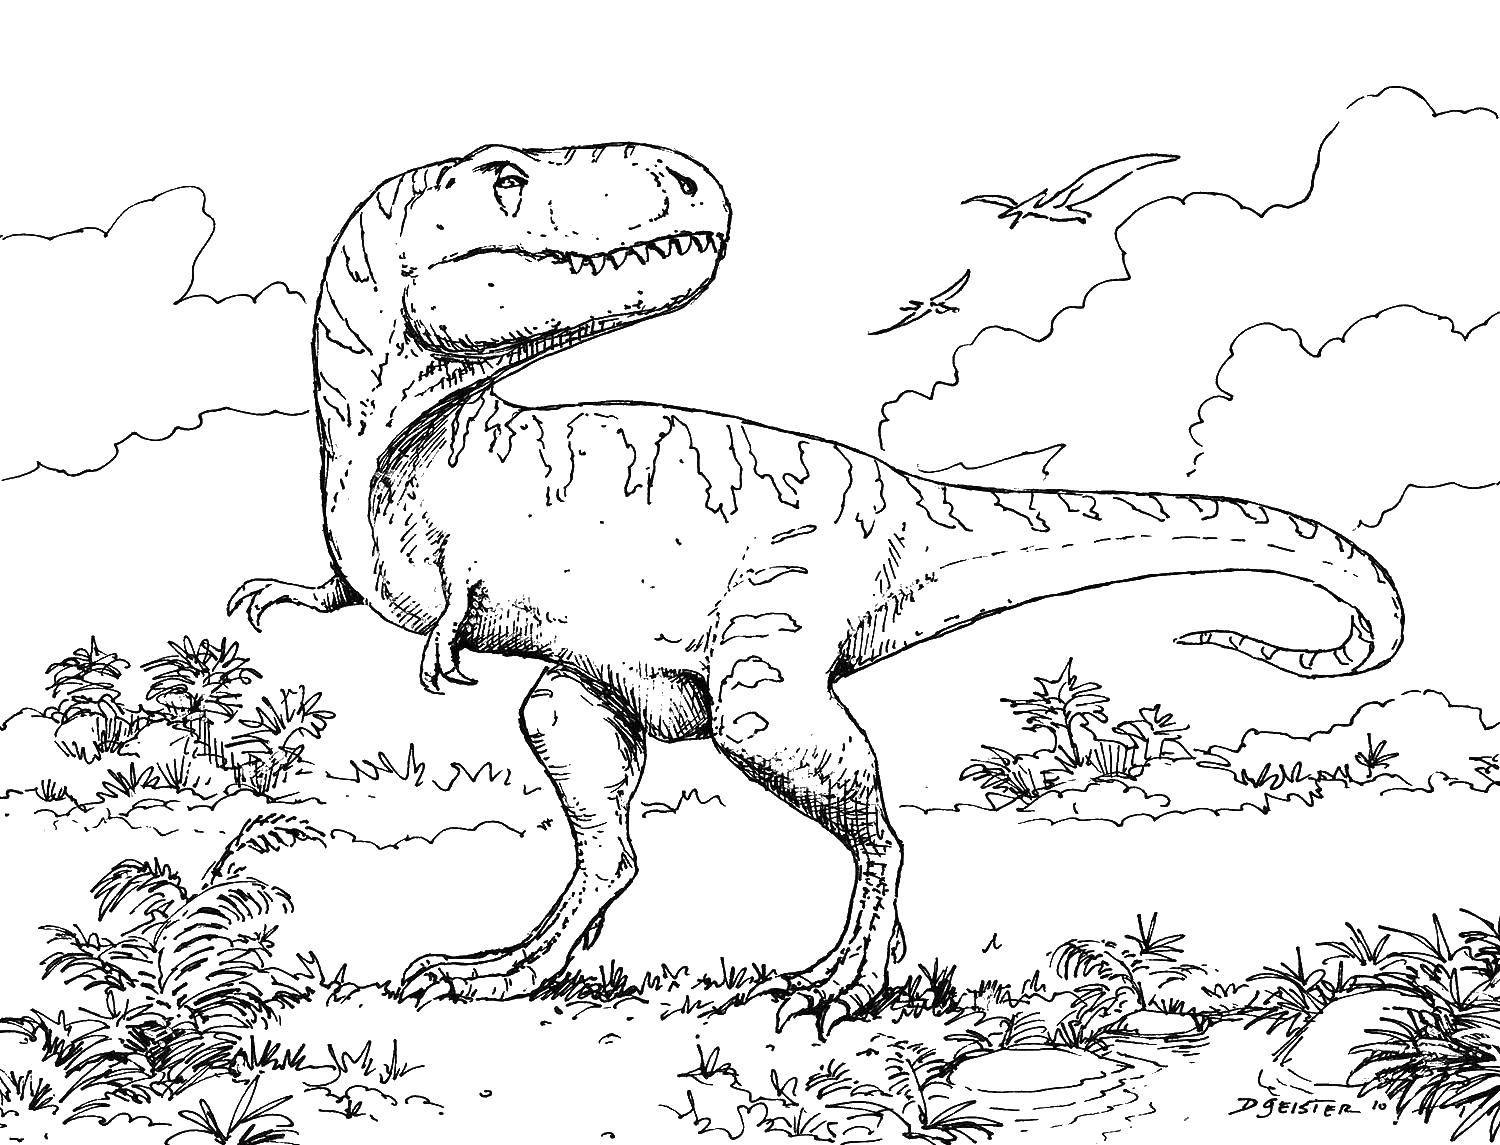 Название: Раскраска Динозавр. Категория: парк юрского периода. Теги: динозавр, природа, динозавры.